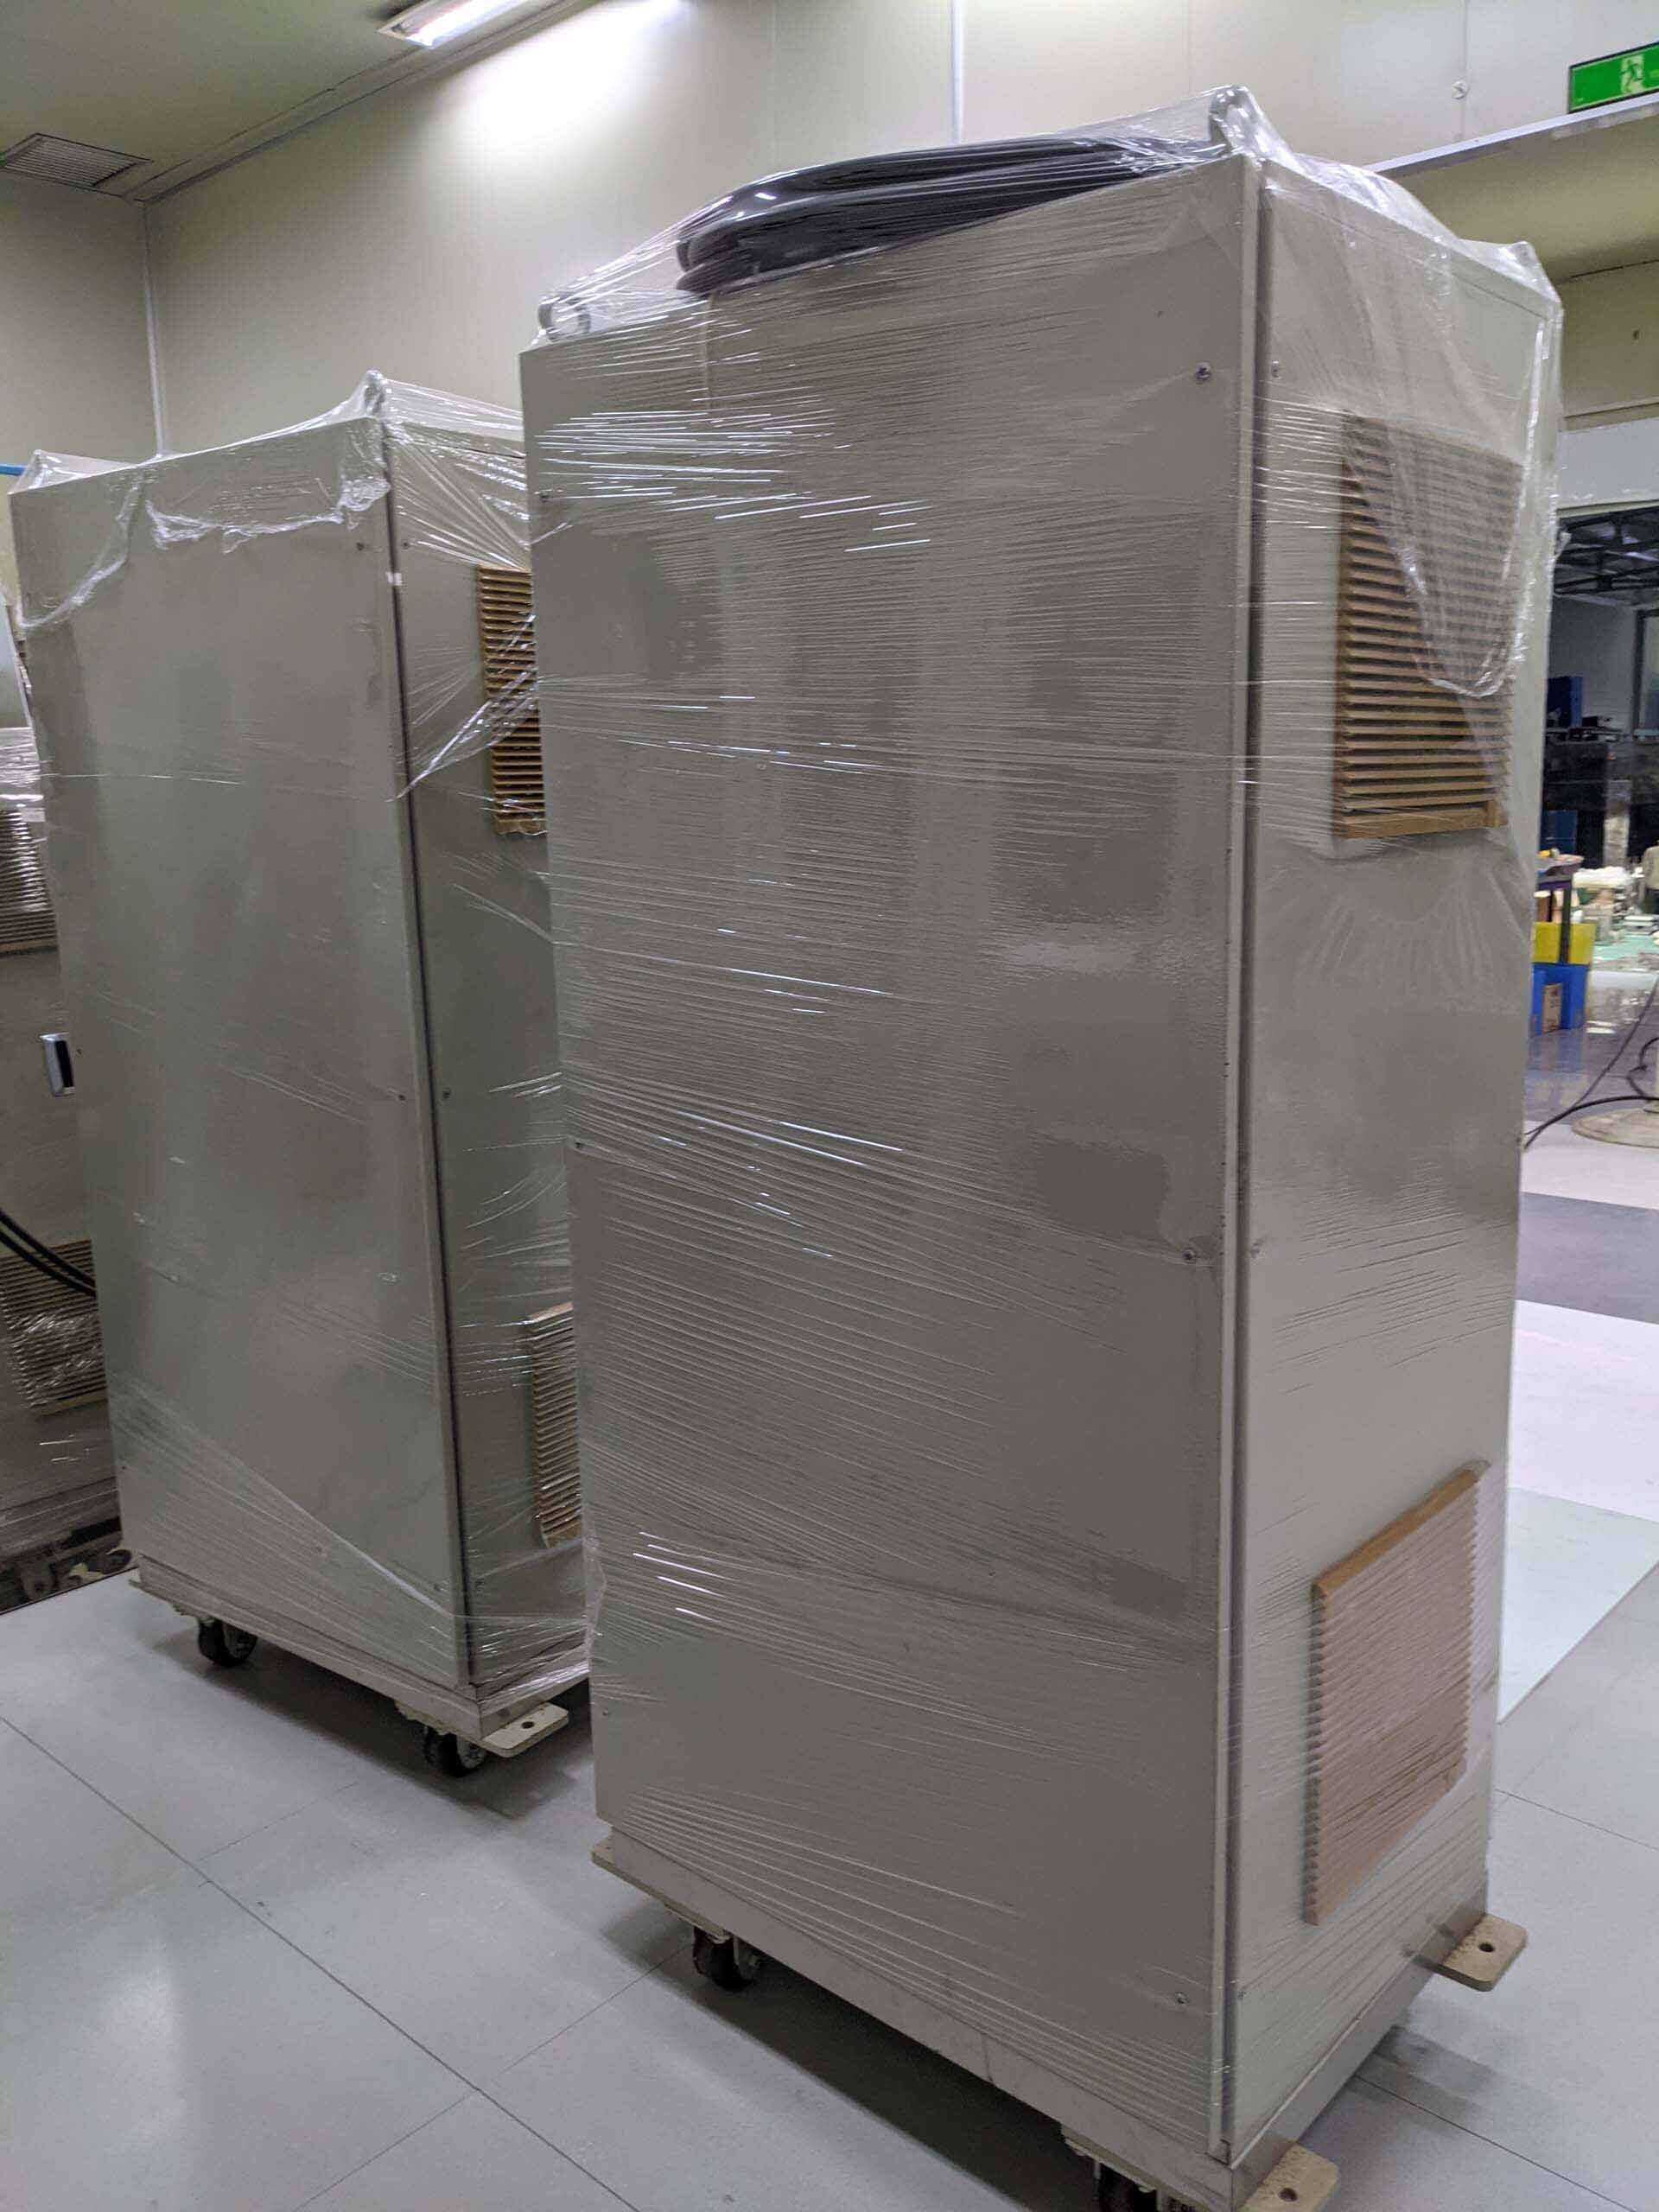 Foto Verwendet TEL / TOKYO ELECTRON Power boxes for Mark Zum Verkauf